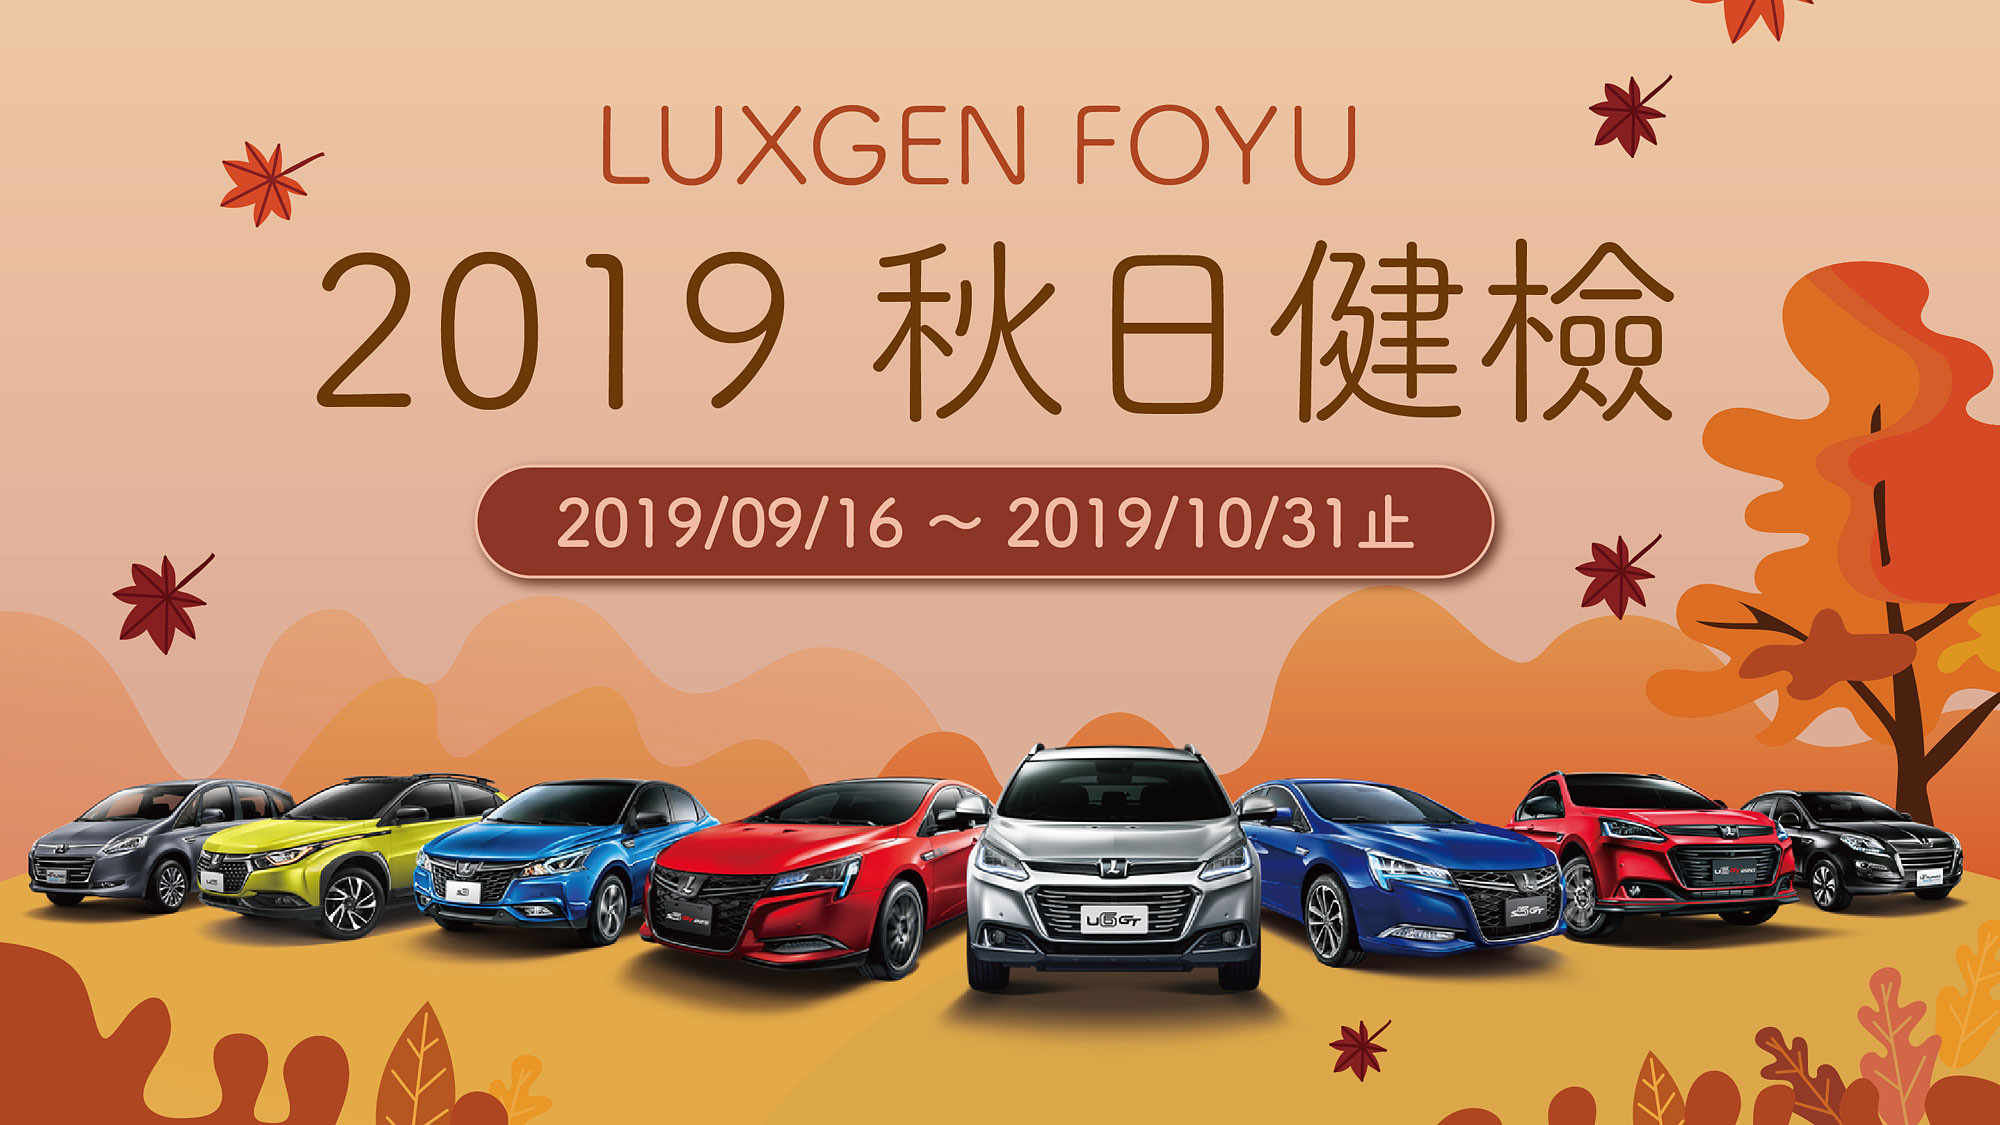 2019 Luxgen FOYU 秋日健檢 9 月 16 日起全面啟動